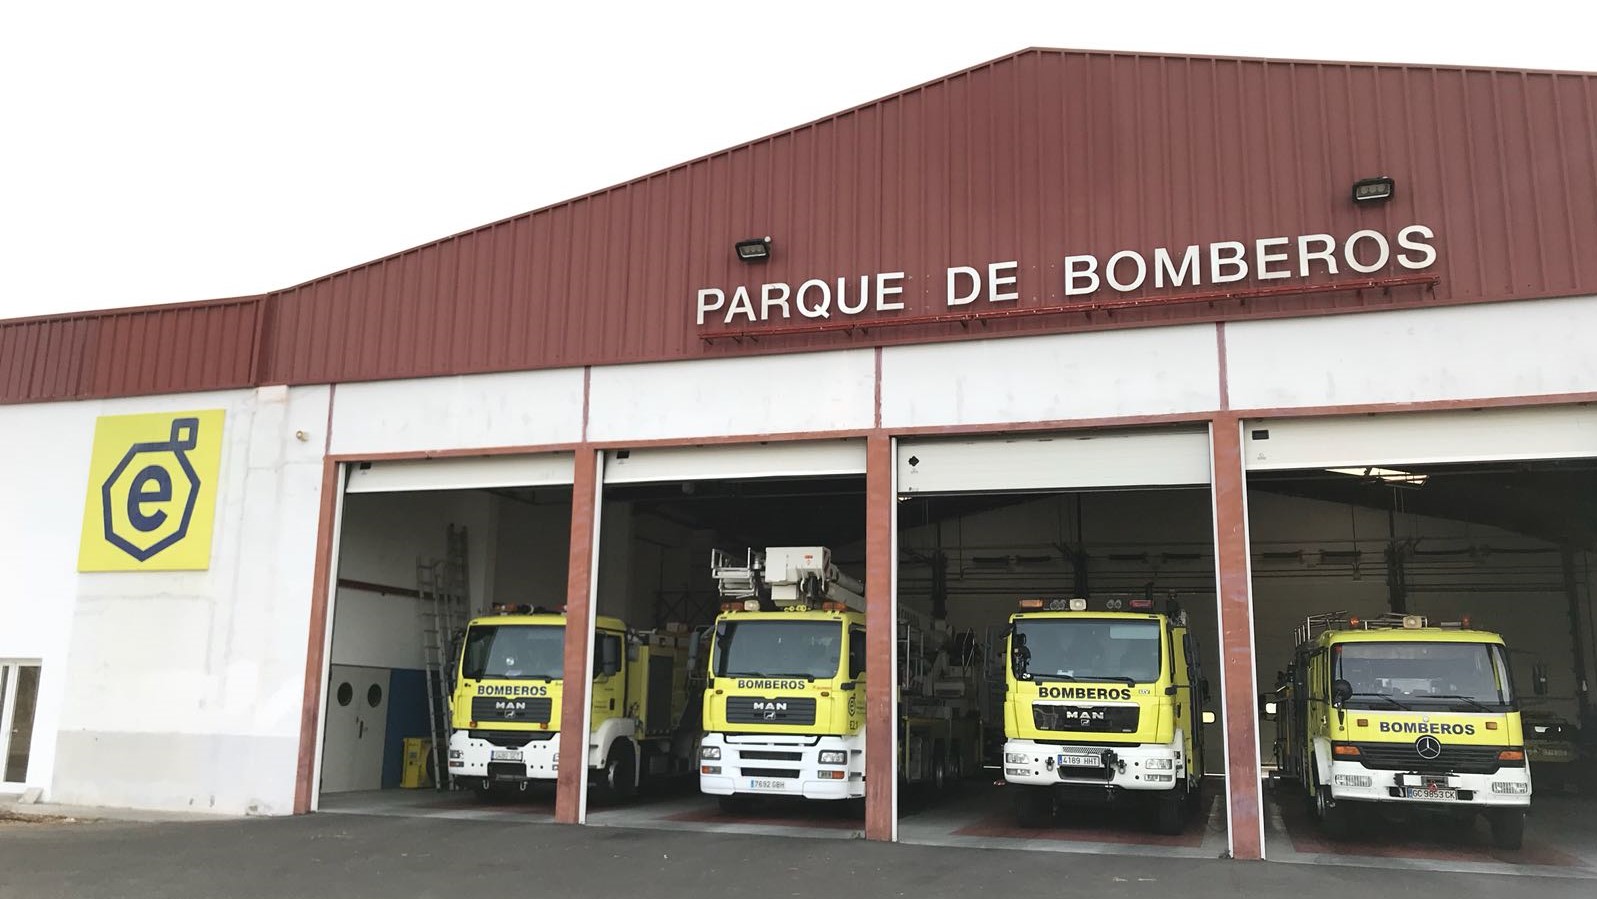 Feuerwehren auf Gran Canaria fehlt massiv Personal